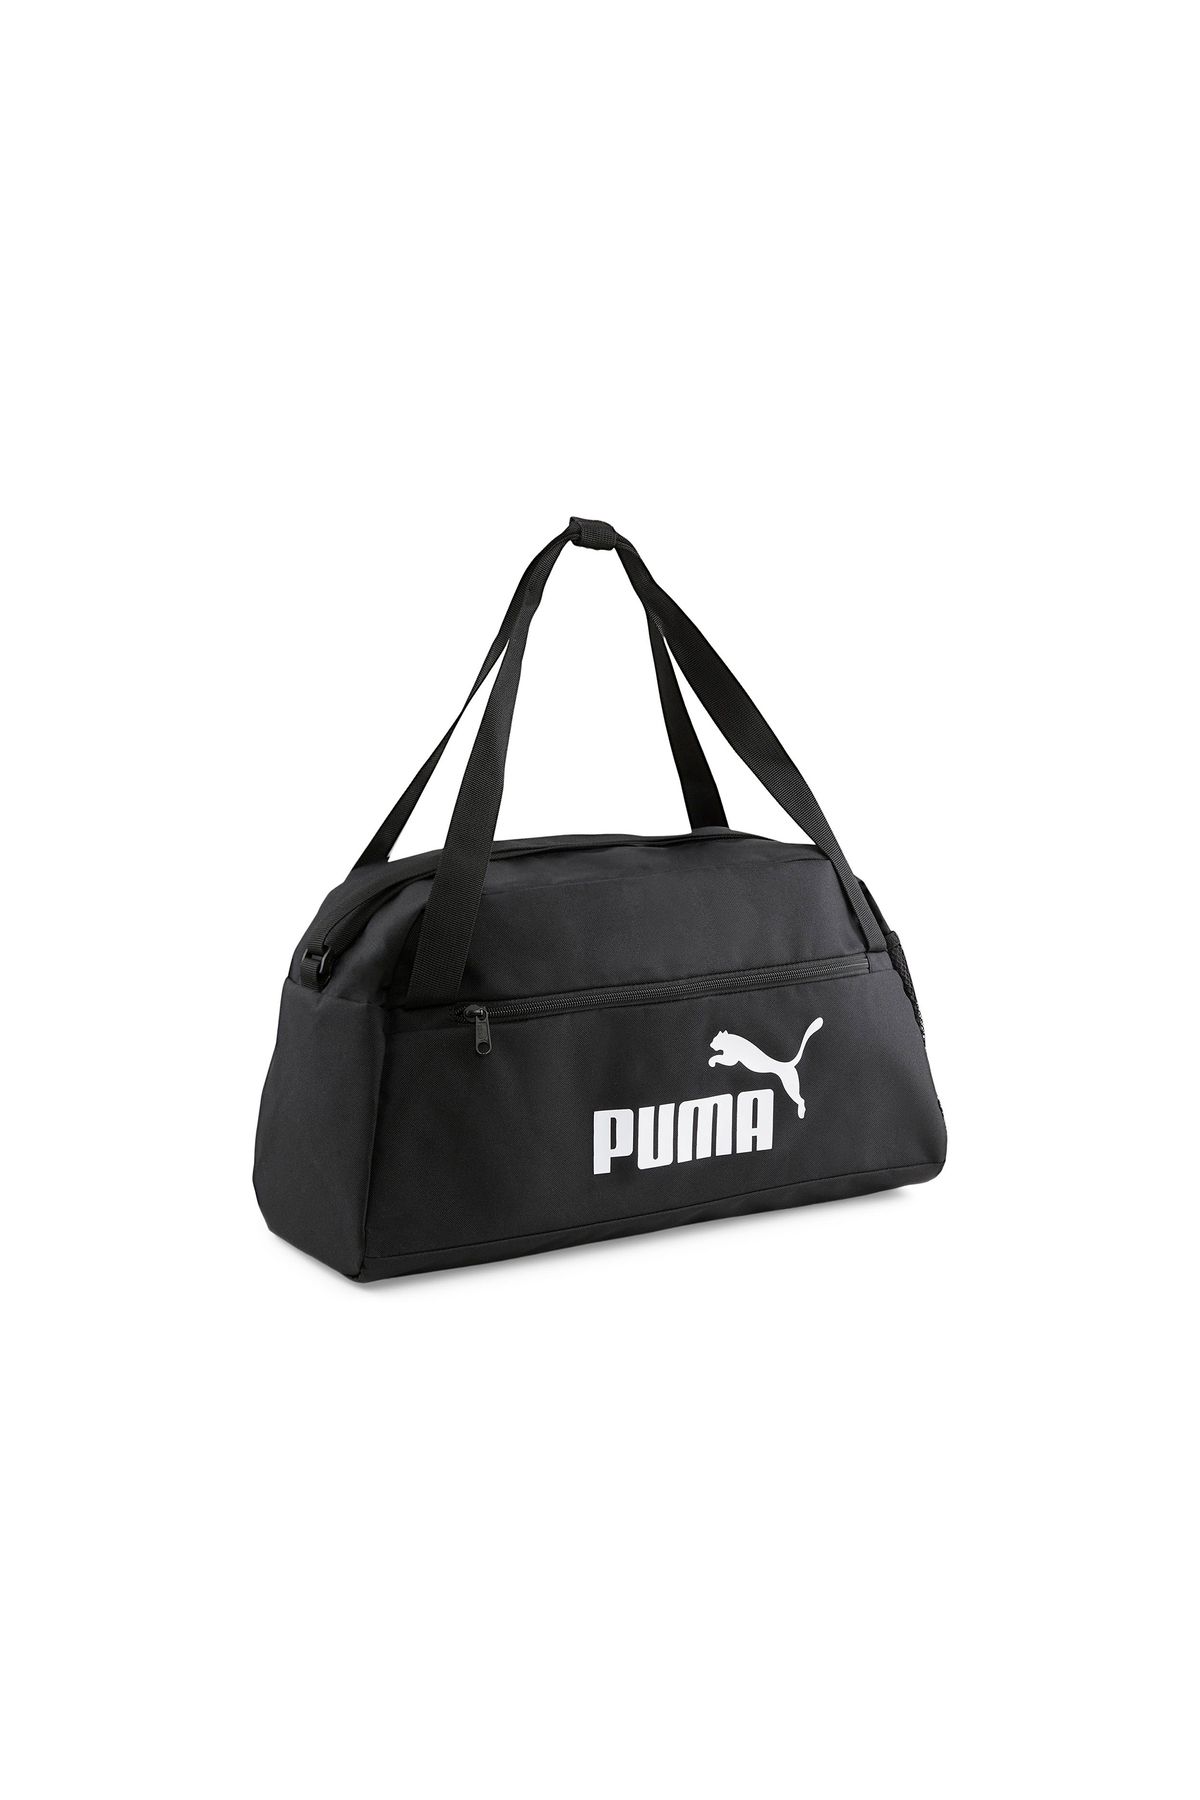 Puma Puma Phase Sports Bag Spor Çantası 7994901 Siyah